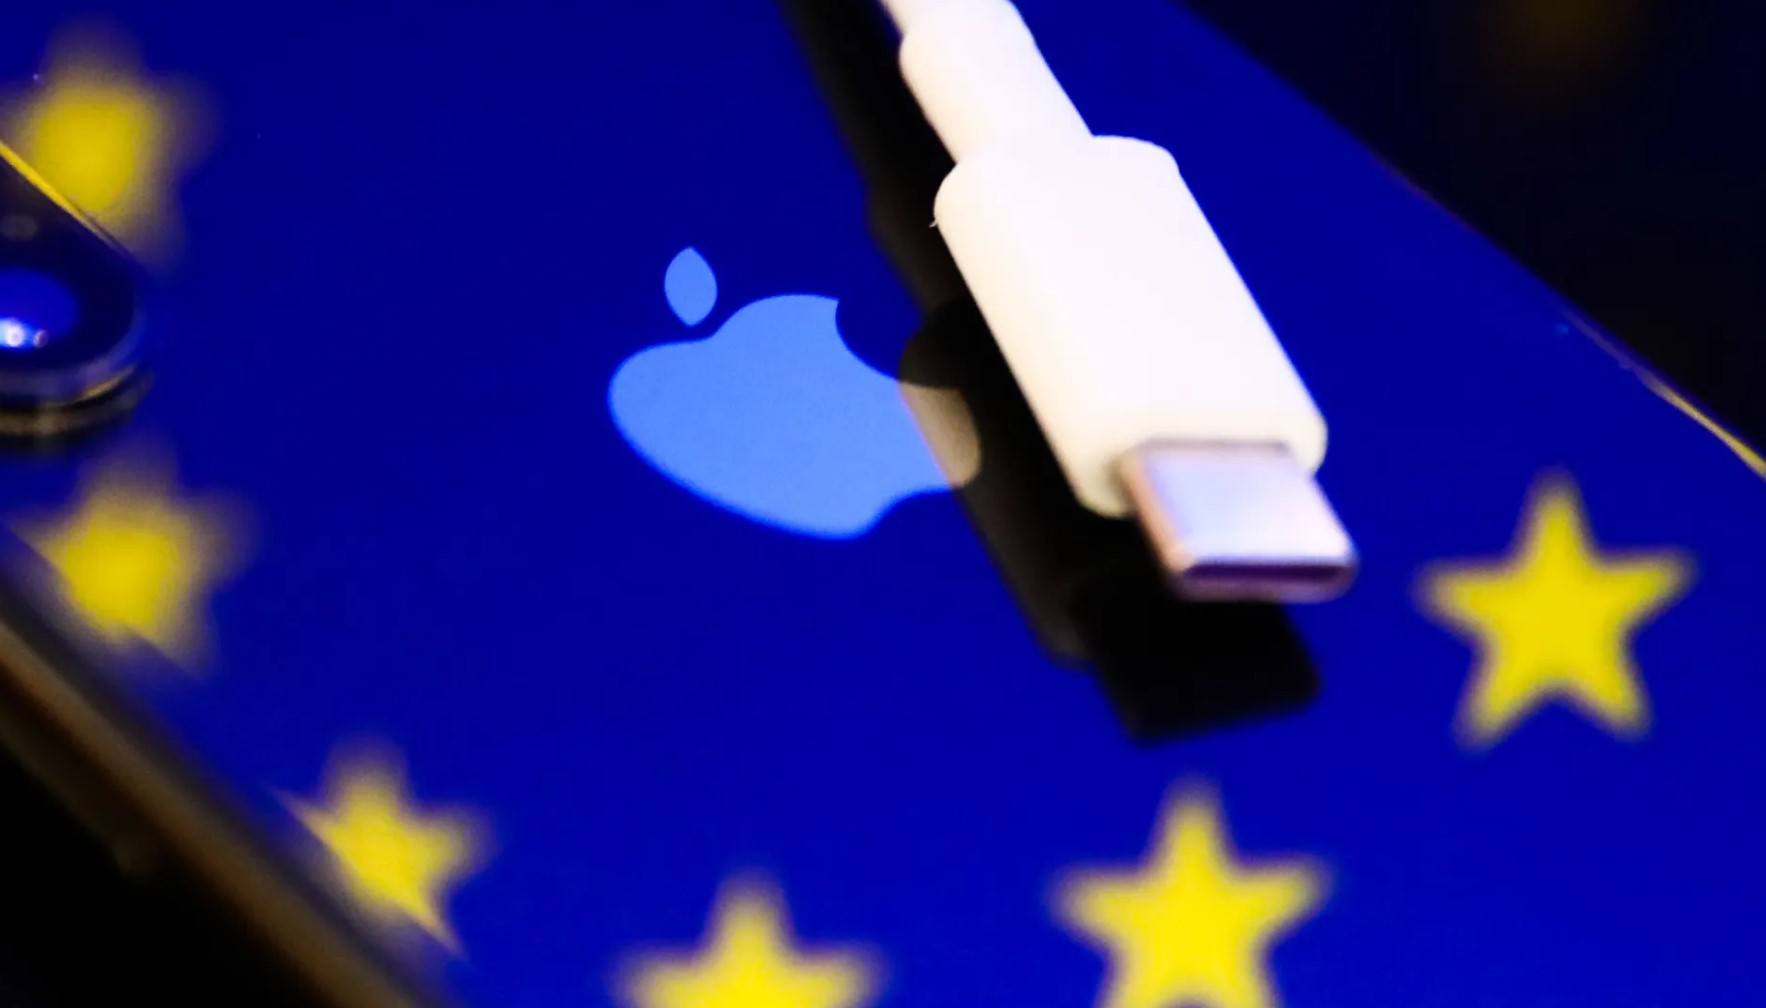 Không có Châu Âu nào ở đây cả, Apple sẽ tự hào nói mang USB-C lên iPhone là ý tưởng của riêng mình - Ảnh 1.